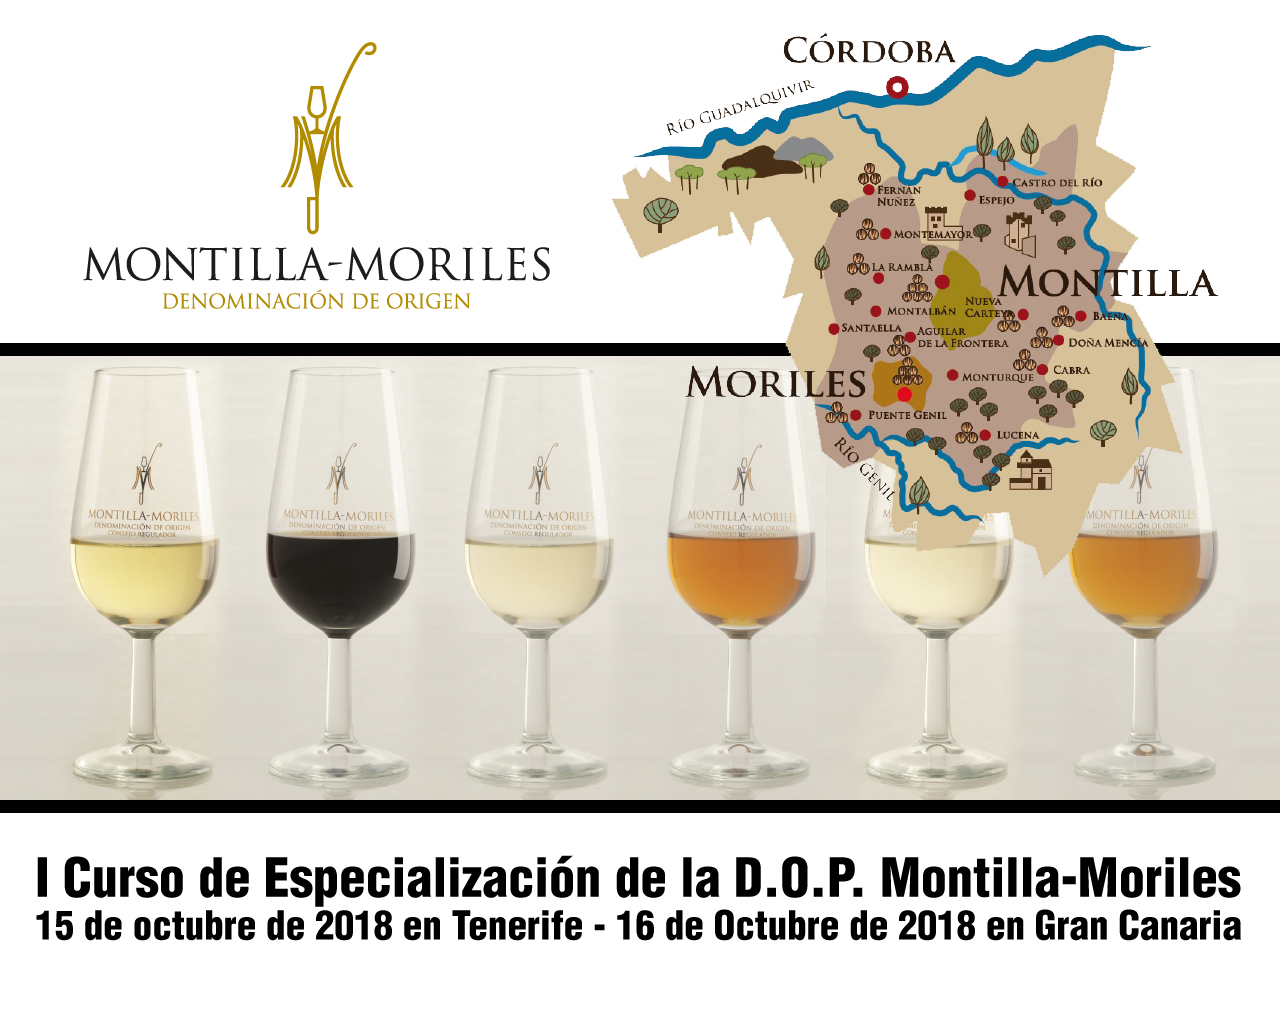 Cursos de “Especialización de vinos de la D.O.P. Montilla-Moriles”, en Tenerife el 15 de Octubre de 2018 y en Gran Canaria el 16 de Octubre de 2018